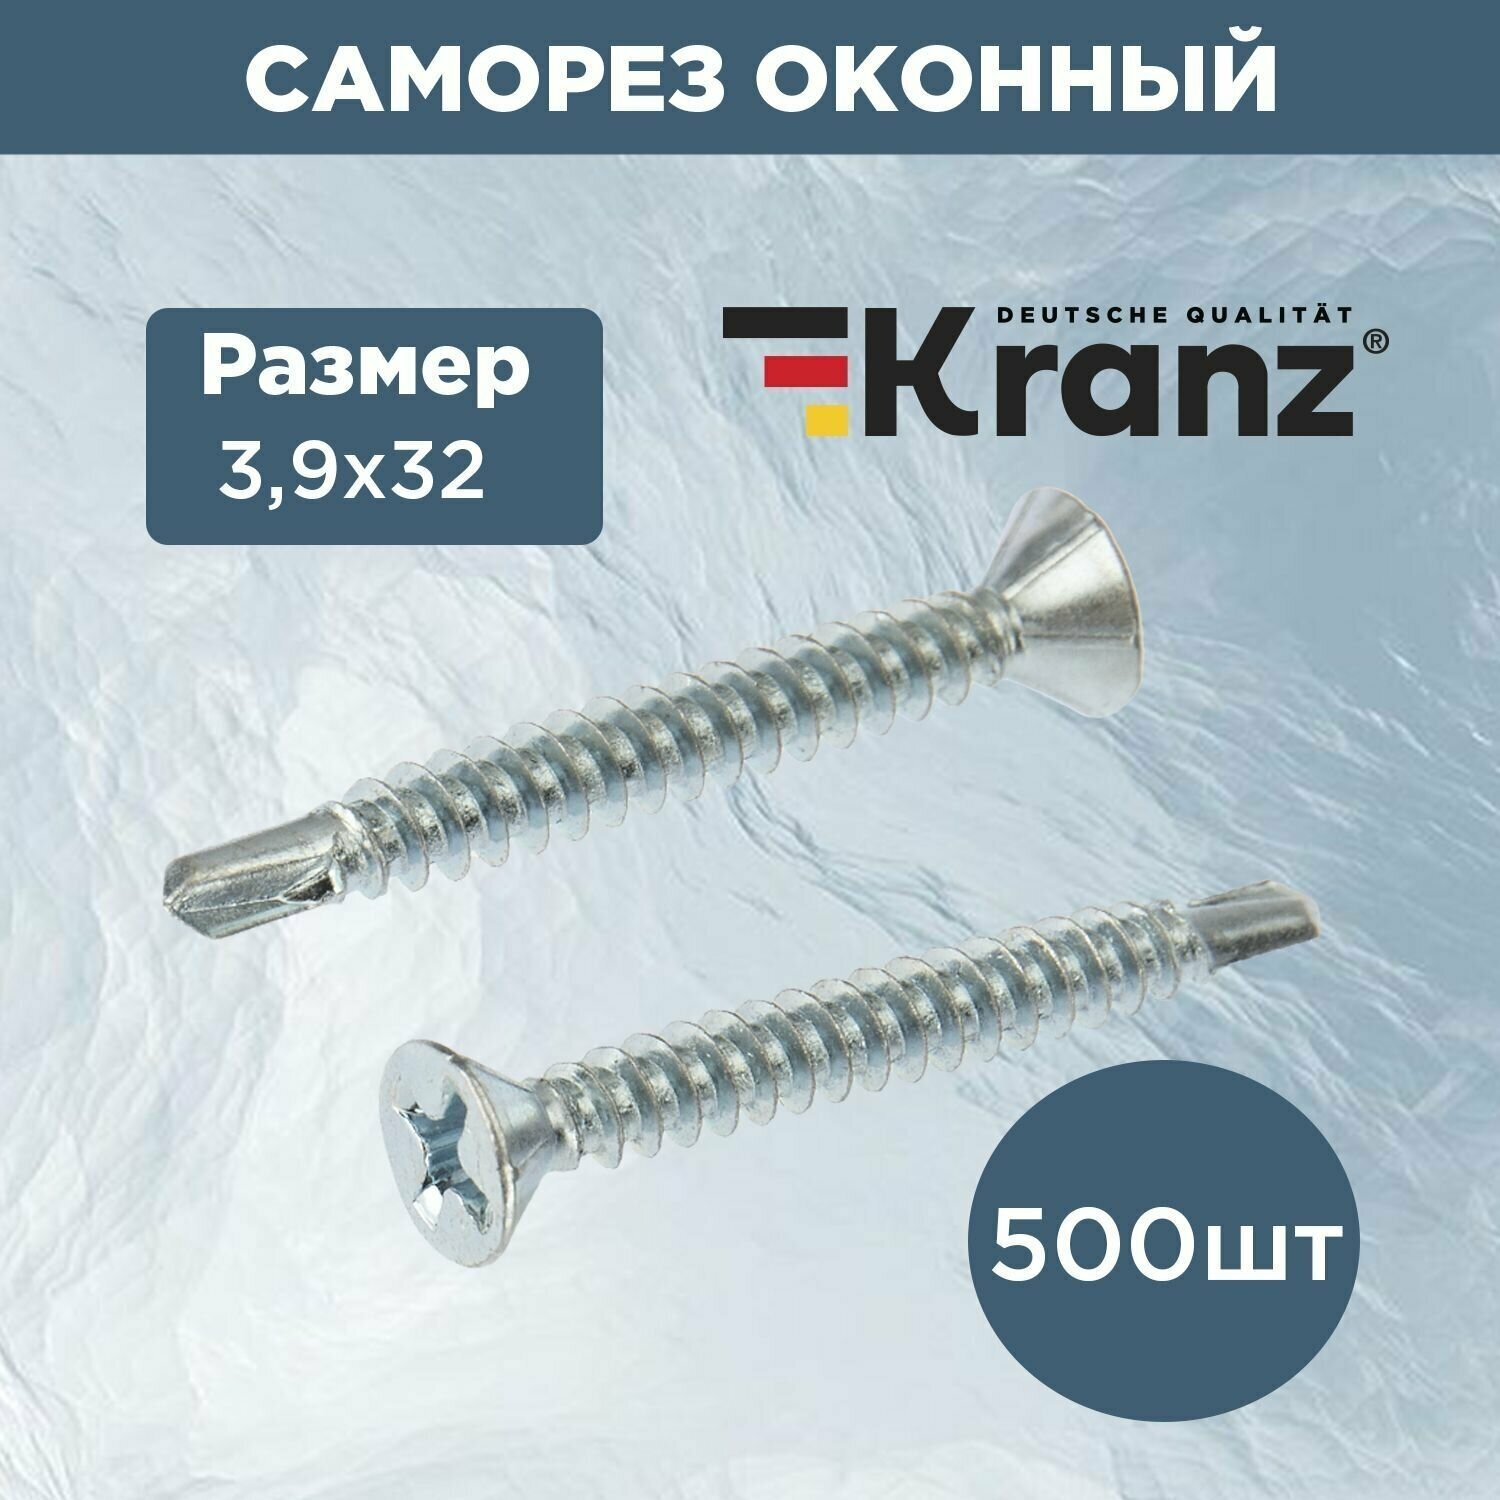 Саморез оконный KRANZ наконечник сверло, 3.9х32, покрытие противокоррозионный белый цинк, упаковка 500 шт.